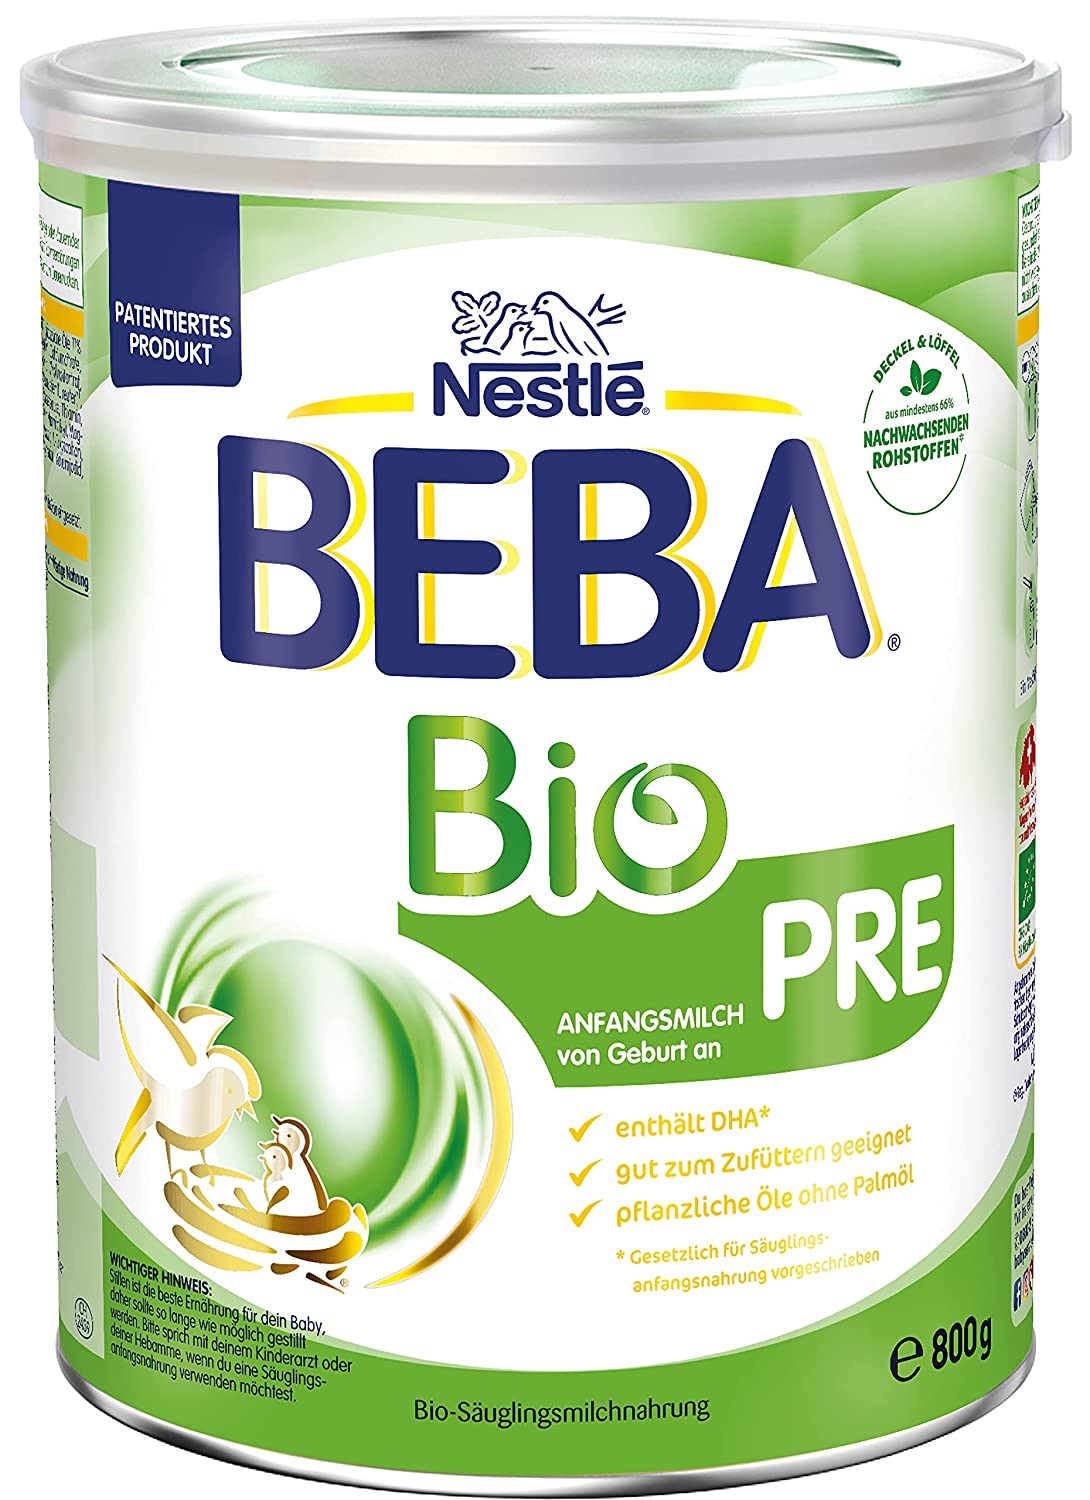 BEBA Bio Pre Anfangsmilch, Anfangsnahrung von Geburt an, 800g